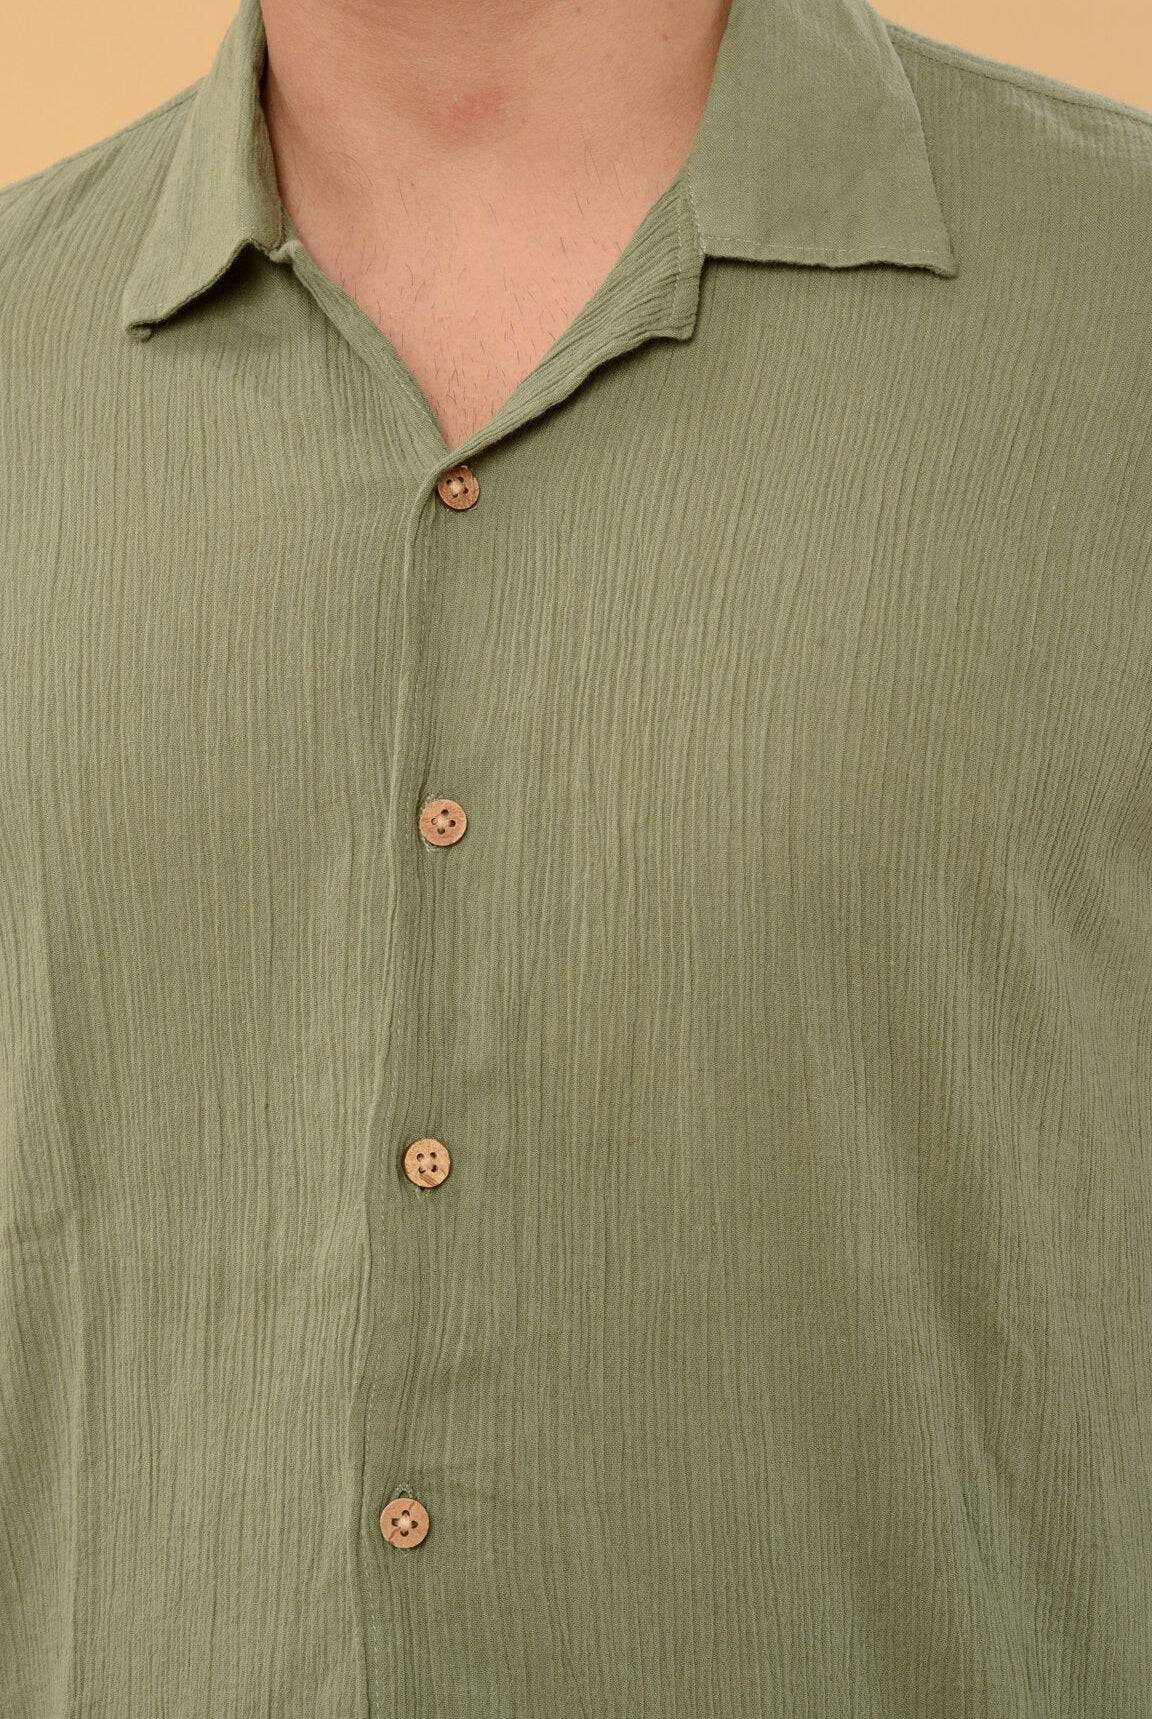 Green Shirt - CiceroniShirtHouse Of K.C